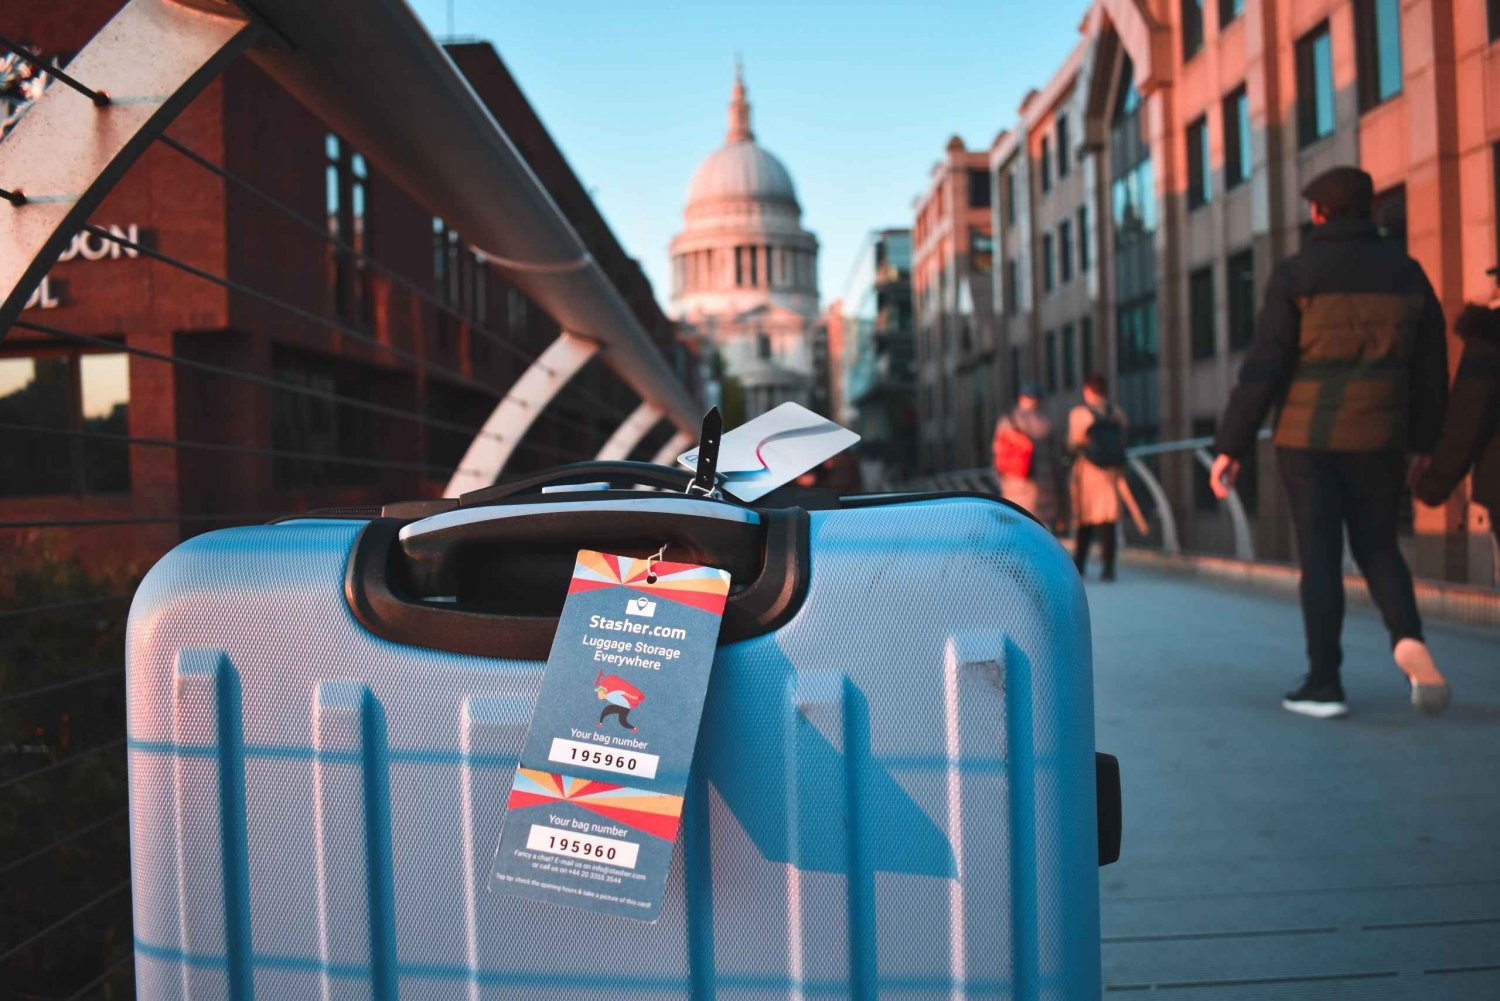 Londra: Deposito bagagli